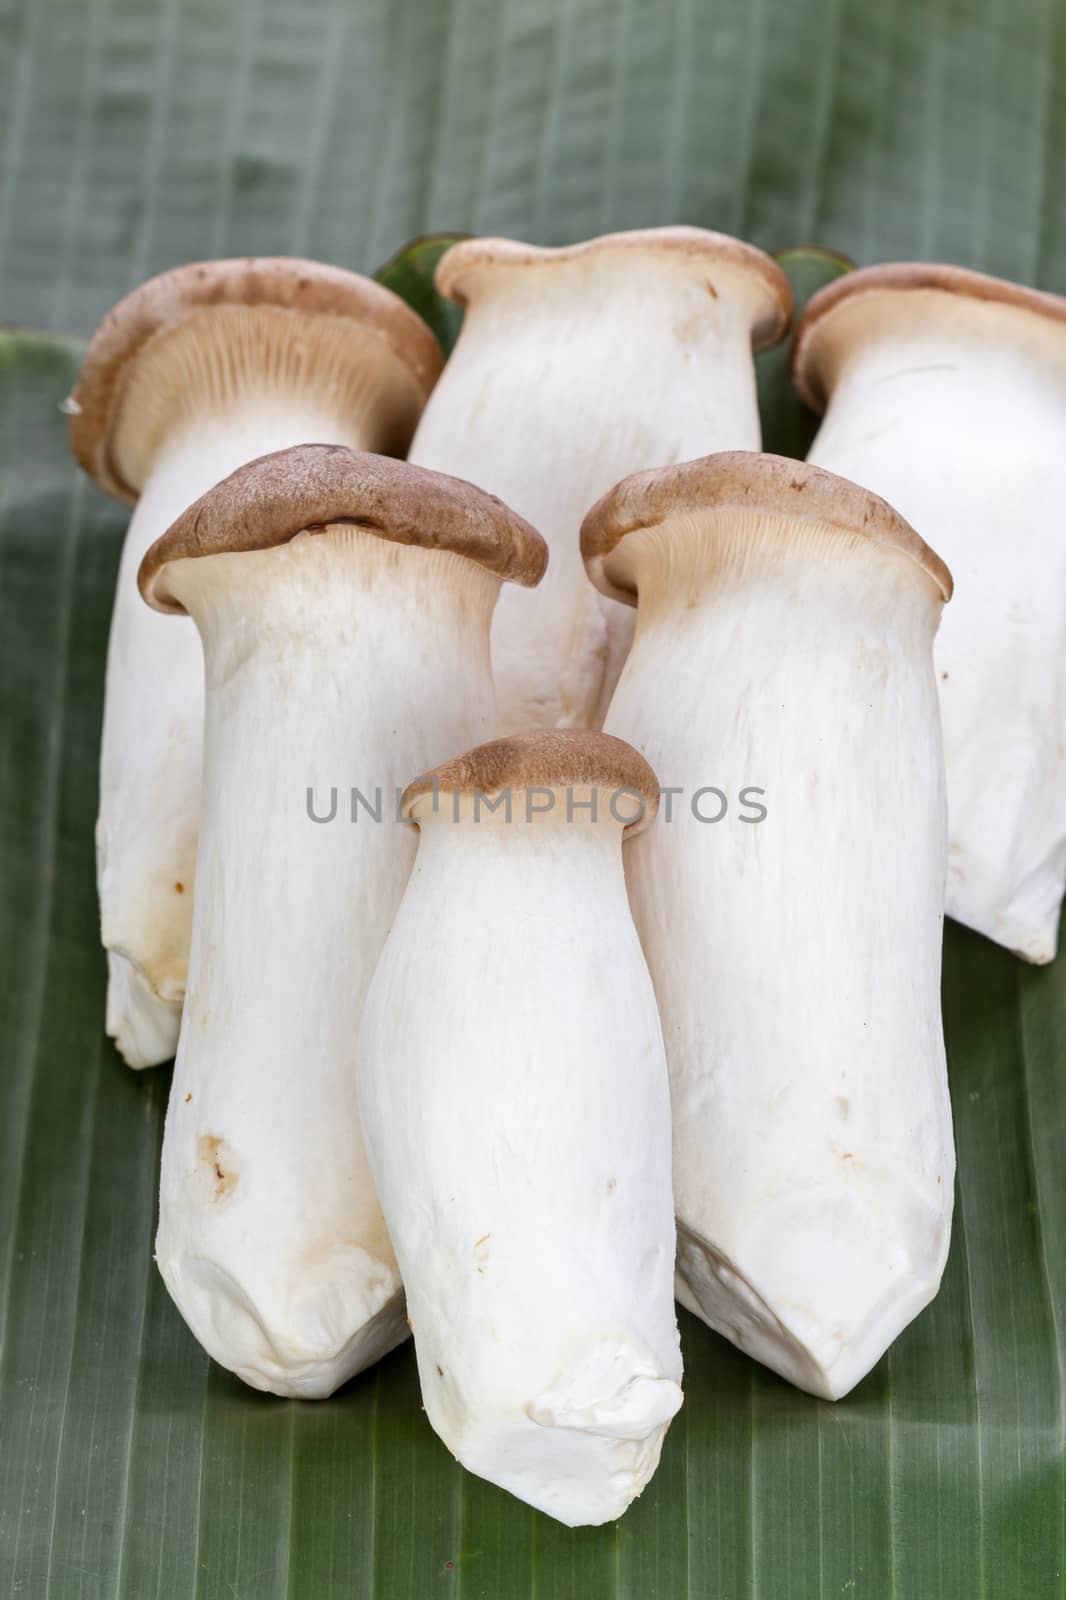 Eryngii mushroom (Pleurotus eryngii) on banana leaf by supersaiyan